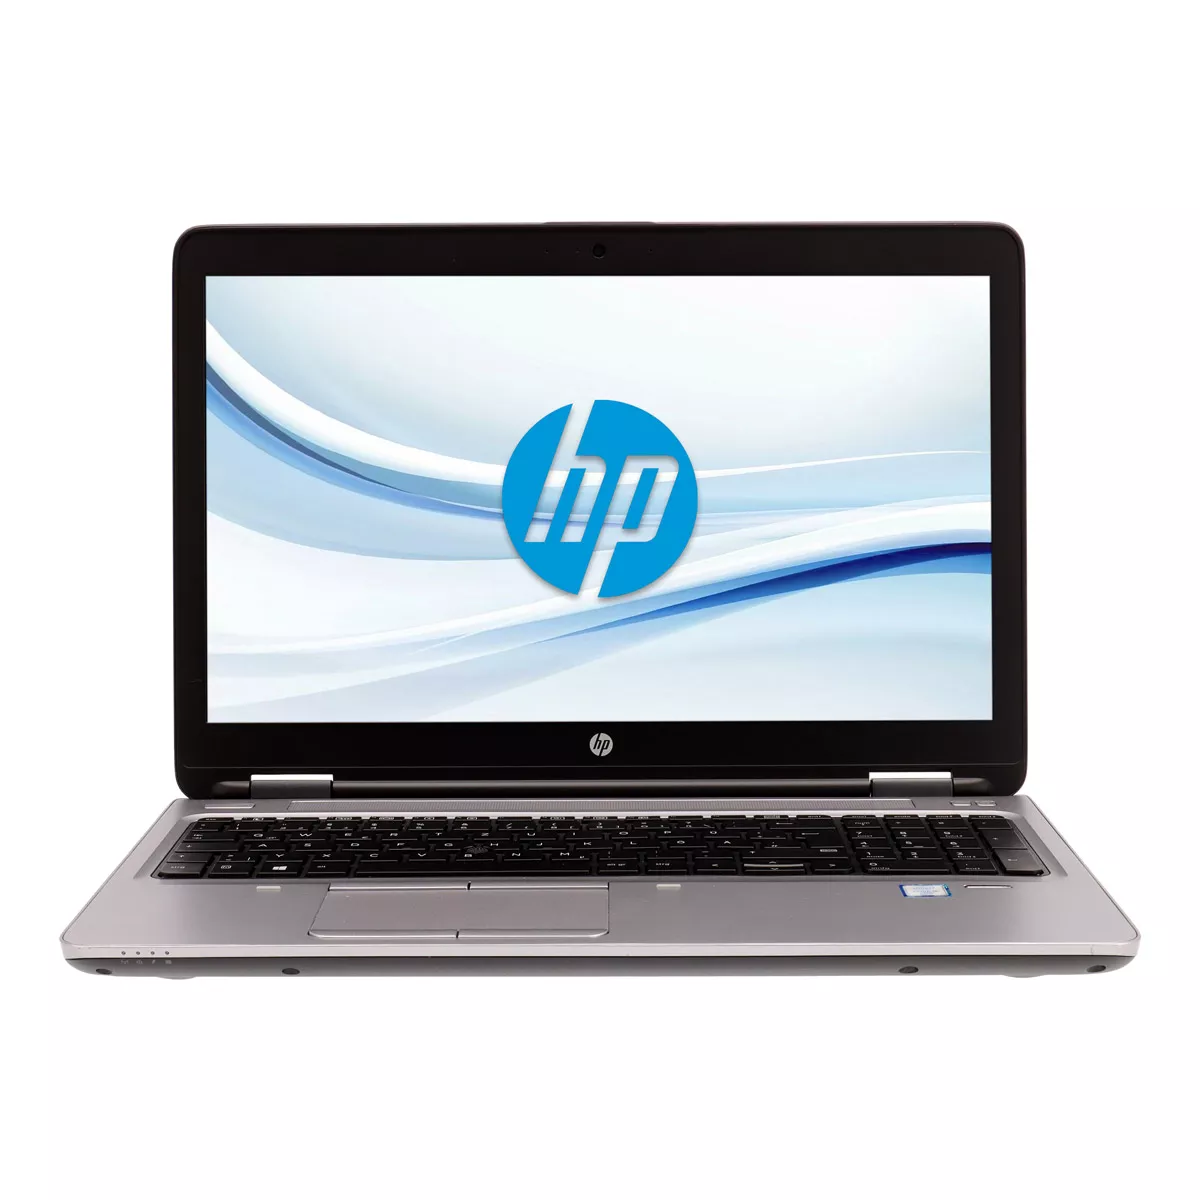 HP ProBook 650 G2 Core i3 6100U 500 GB HDD Webcam A+